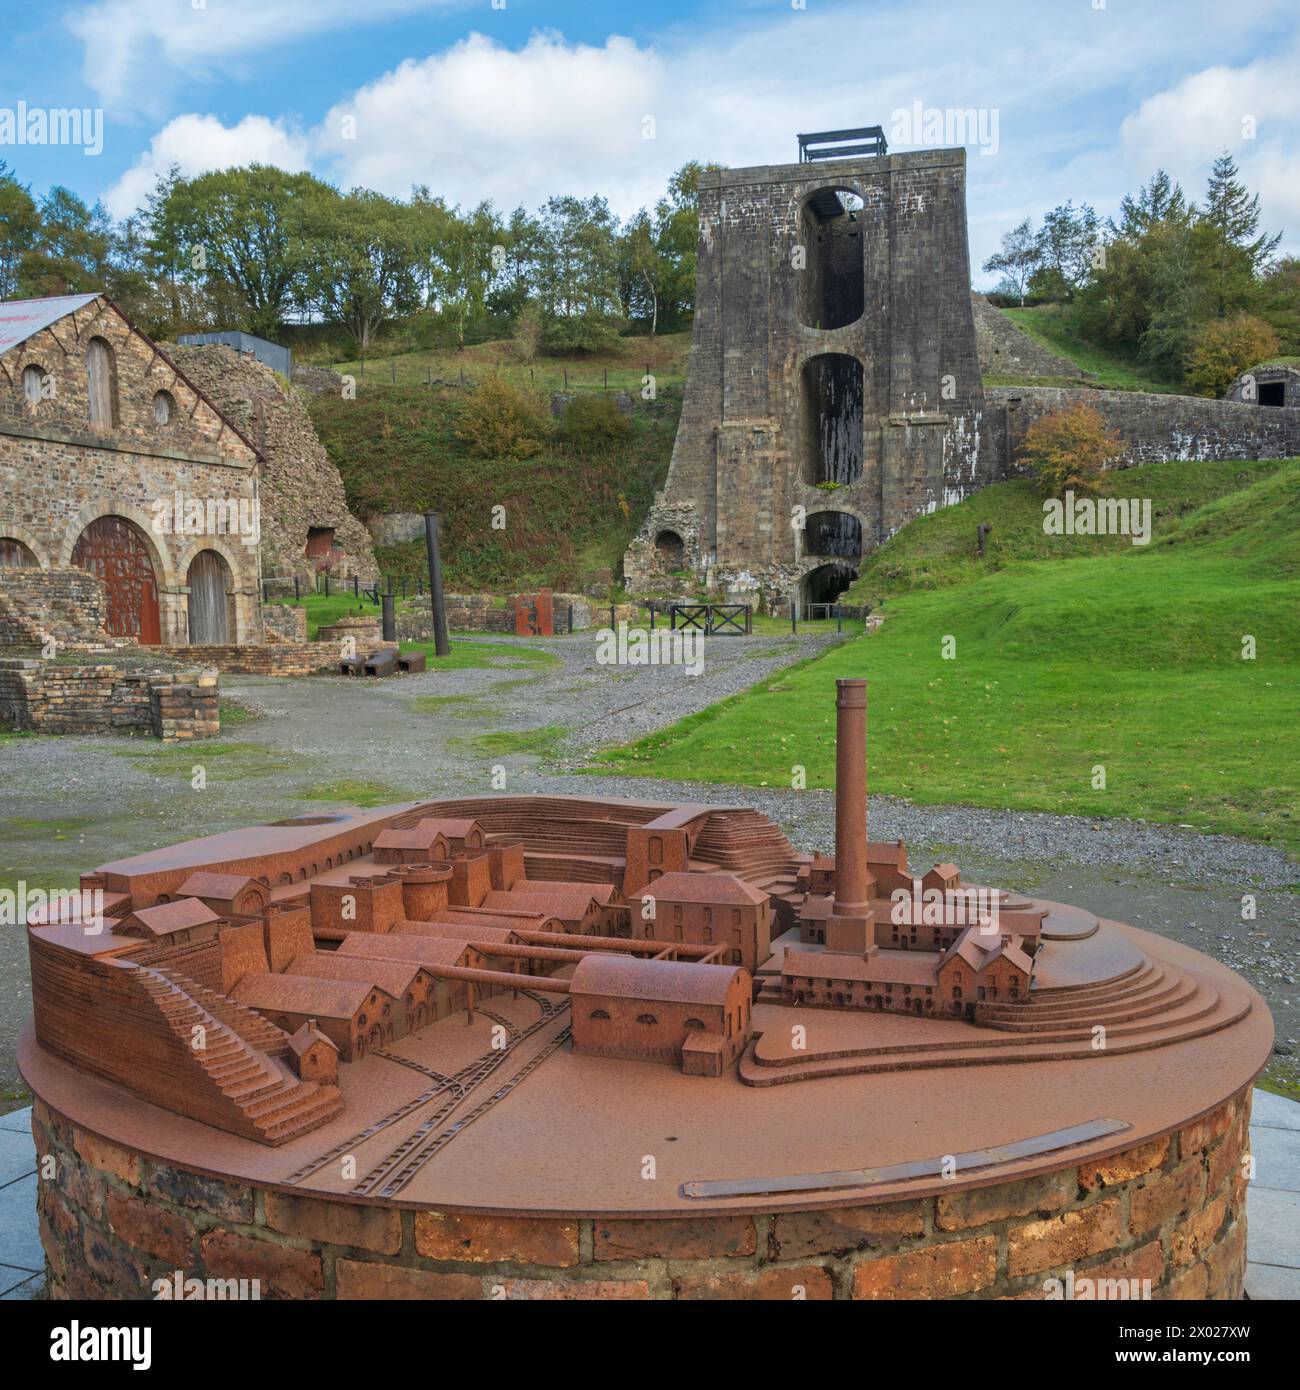 Une maquette en fer de la façon dont l'usine aurait ressemblé à son apogée, au Blaenavon Ironworks Museum à Blaenavon, Abergavenny, pays de Galles Banque D'Images